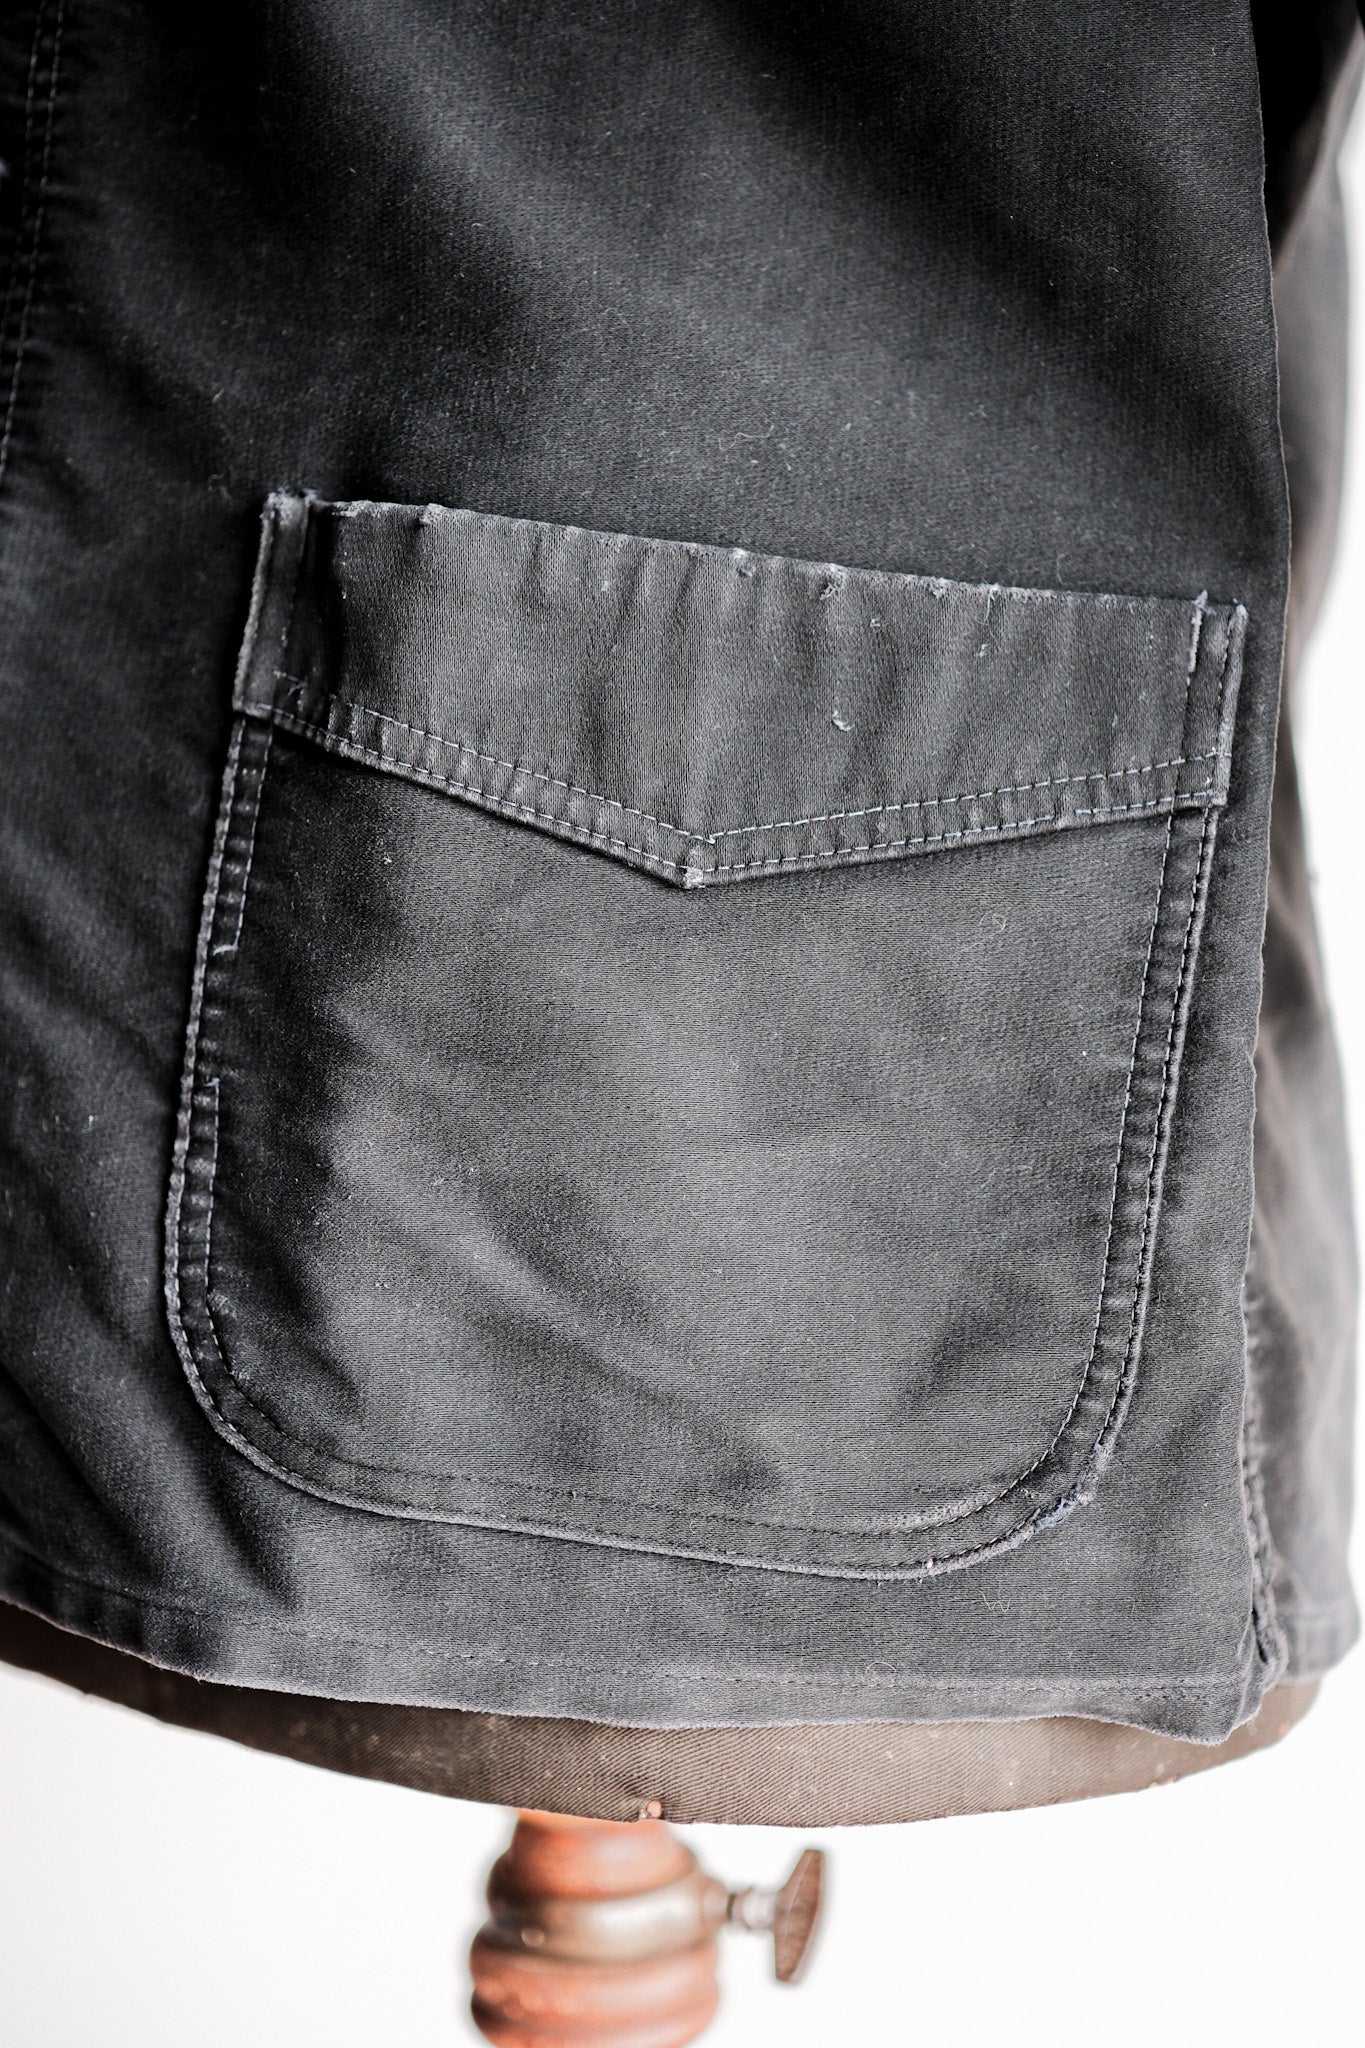 [~ 50's] French vintage noire moleskin work veste taille.52 "Le Mont St. Michel"